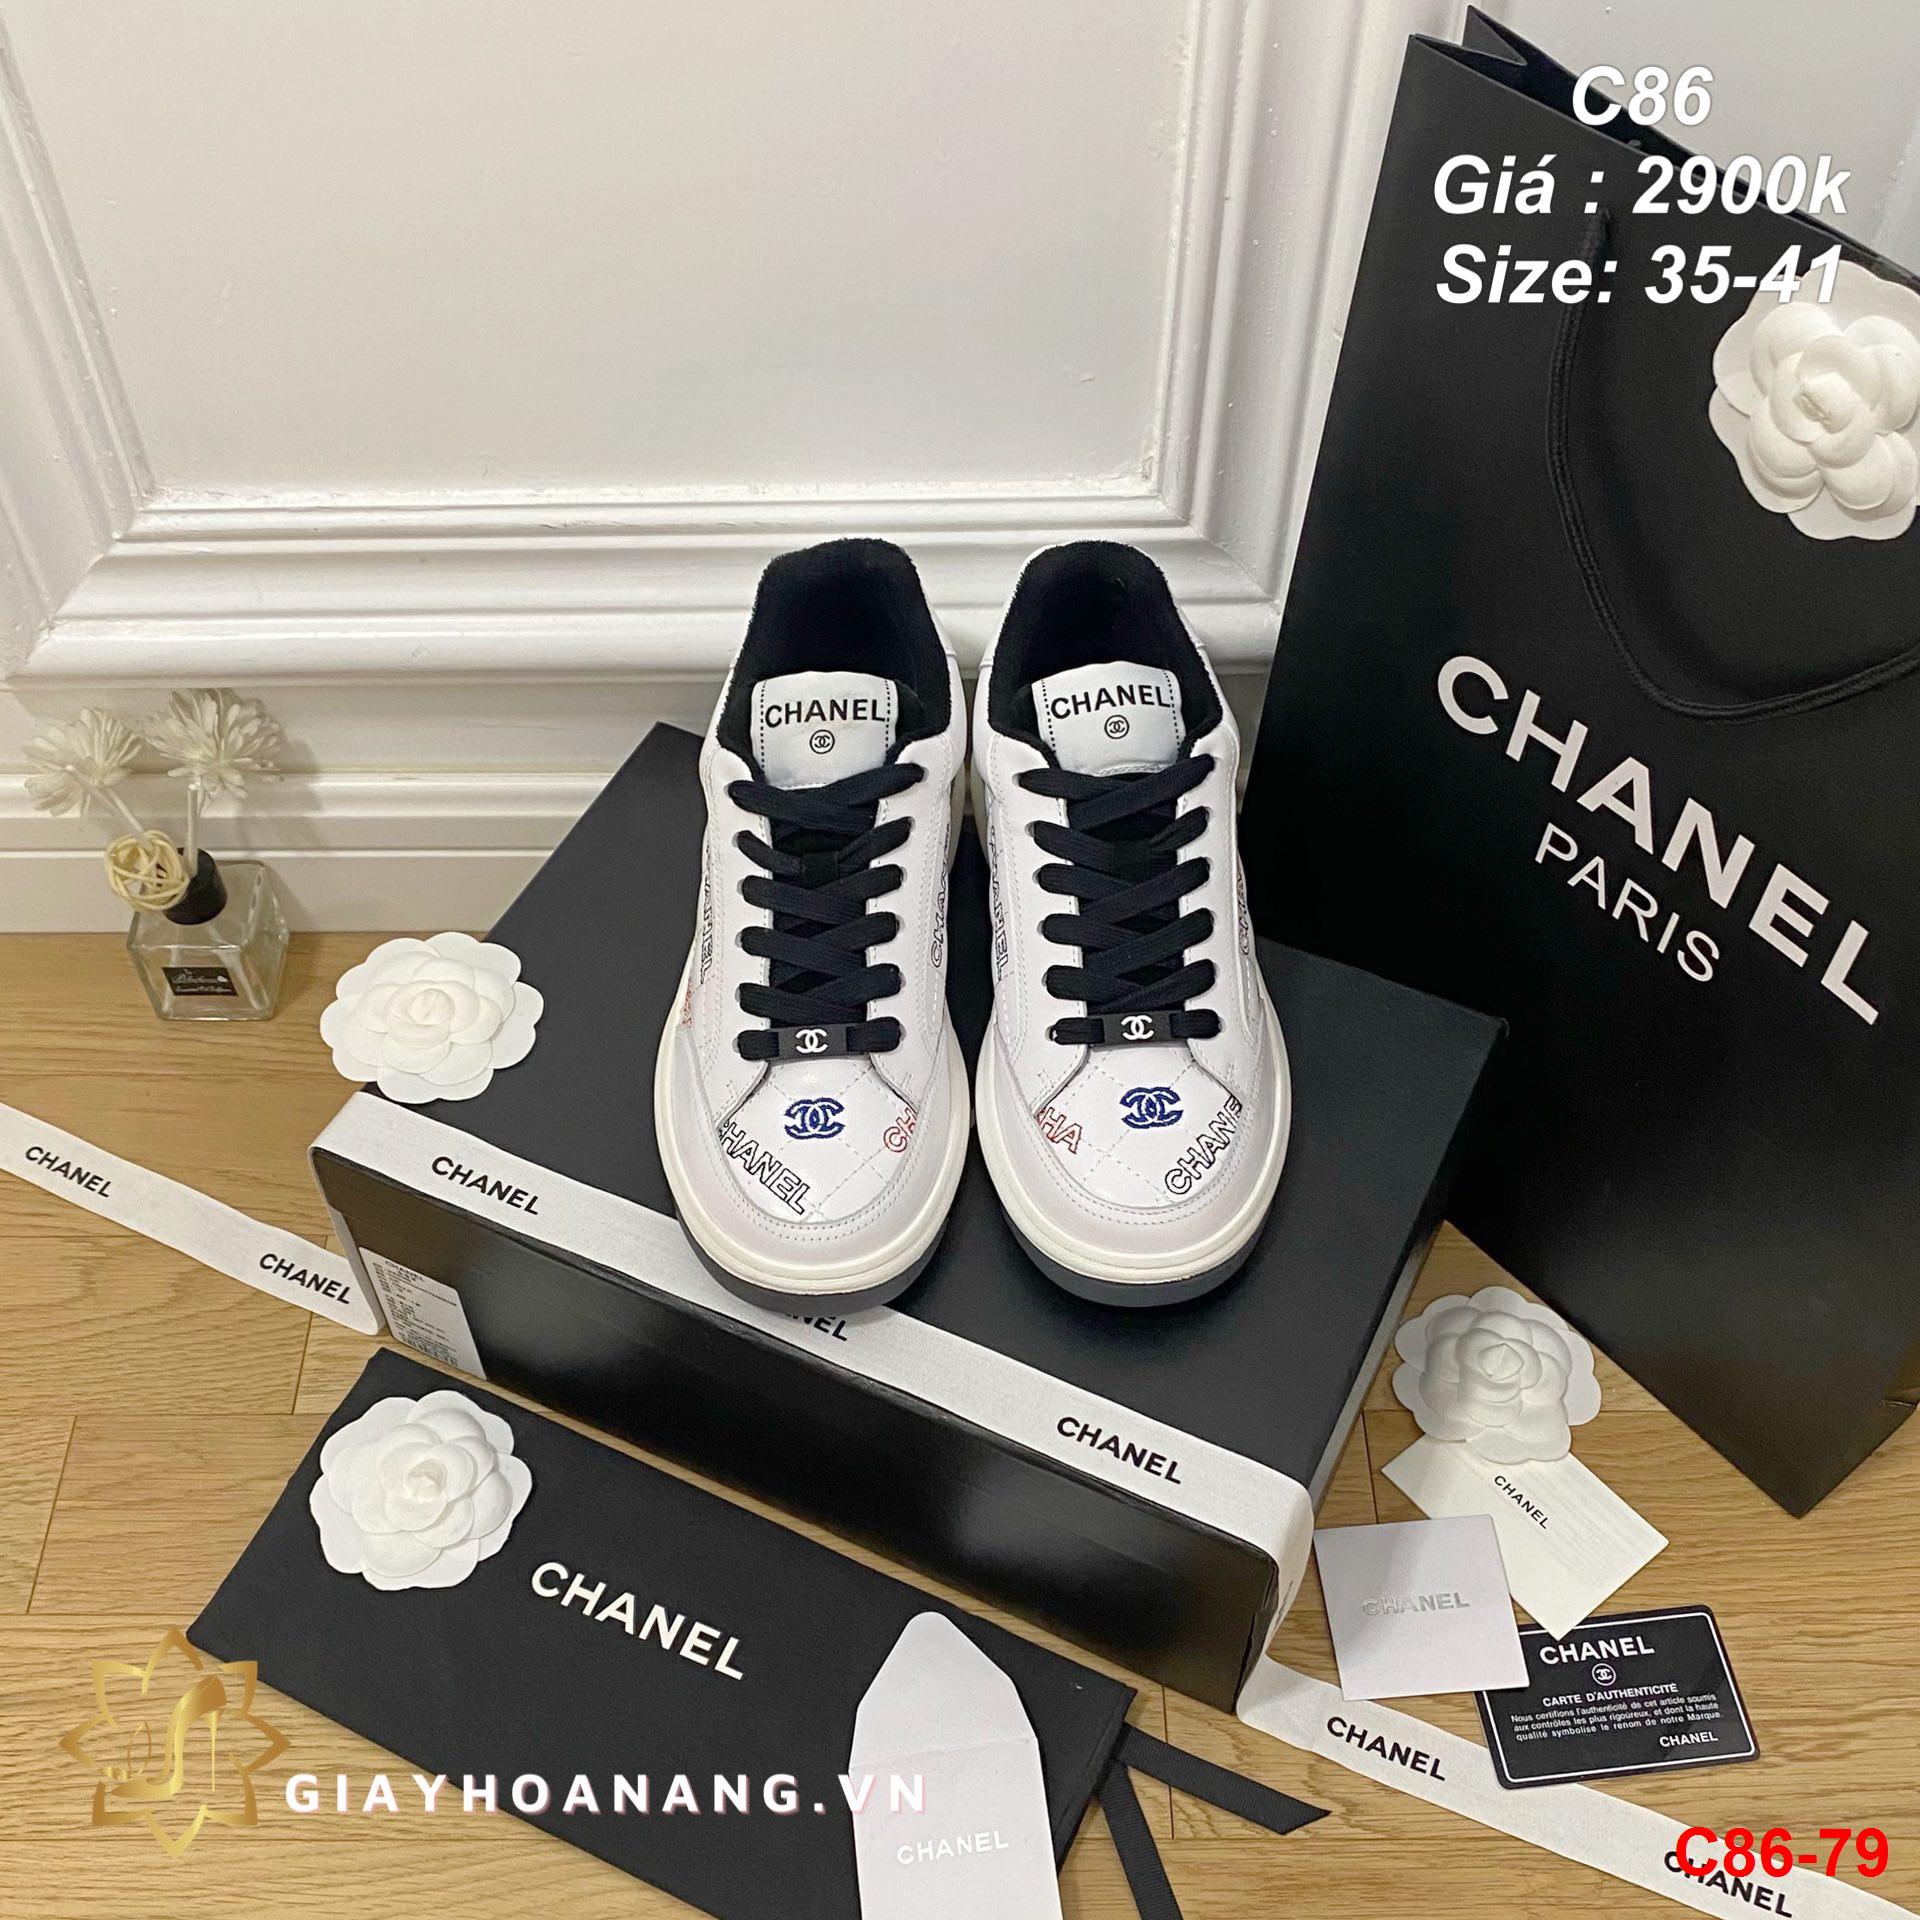 C86-79 Chanel giày thể thao siêu cấp